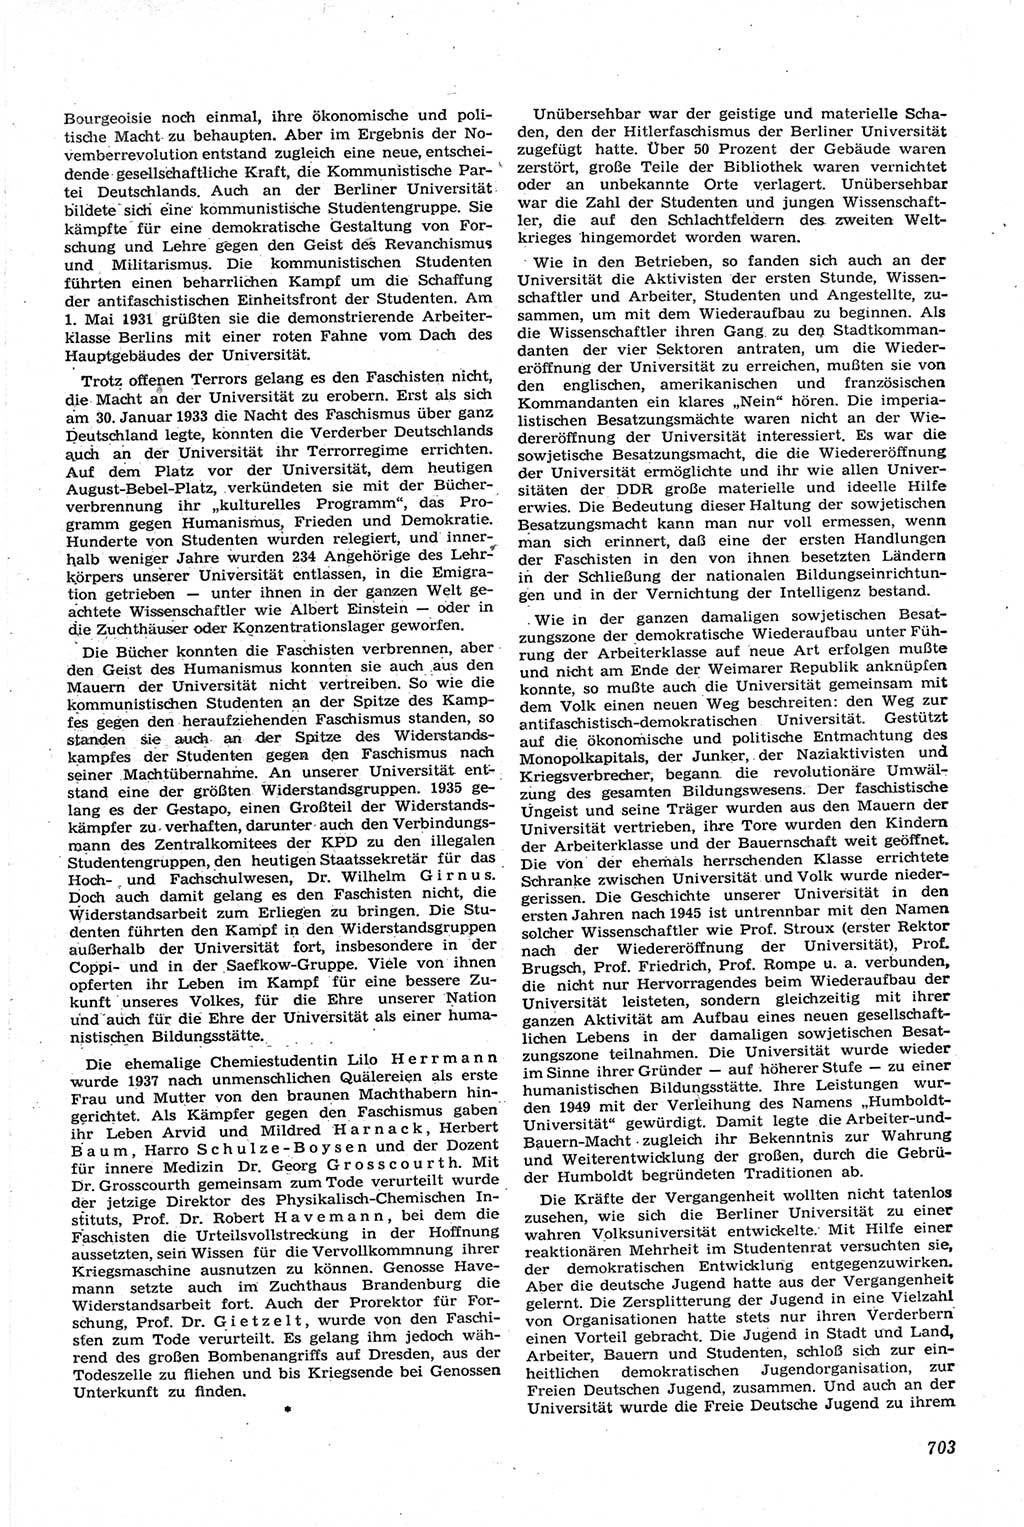 Neue Justiz (NJ), Zeitschrift für Recht und Rechtswissenschaft [Deutsche Demokratische Republik (DDR)], 14. Jahrgang 1960, Seite 703 (NJ DDR 1960, S. 703)